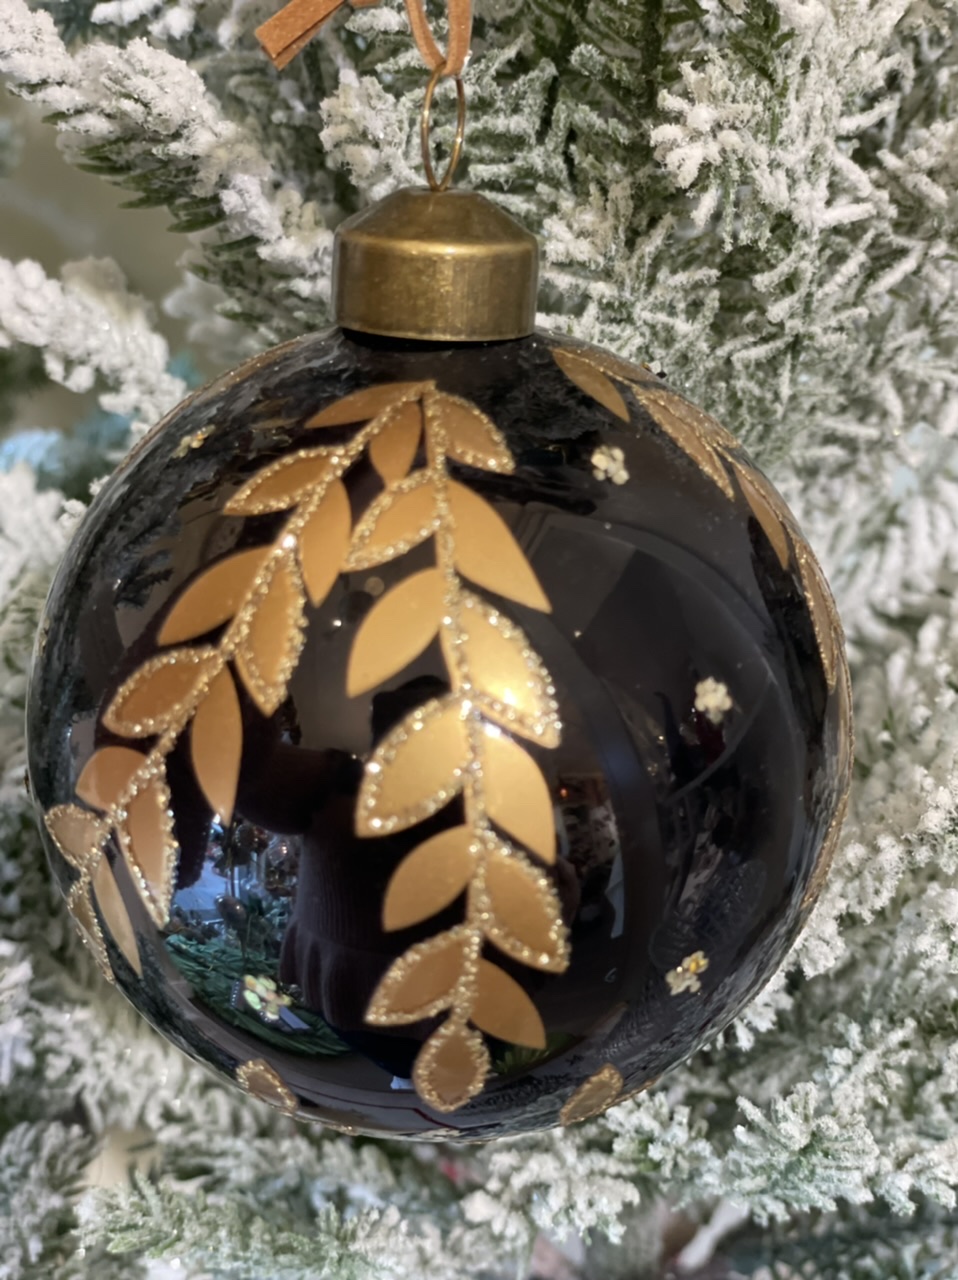 Appendino sfera nero e oro con brillantini in rilievo -  vetro decoro natalizio - disponibile in due modelli diversi  - edg